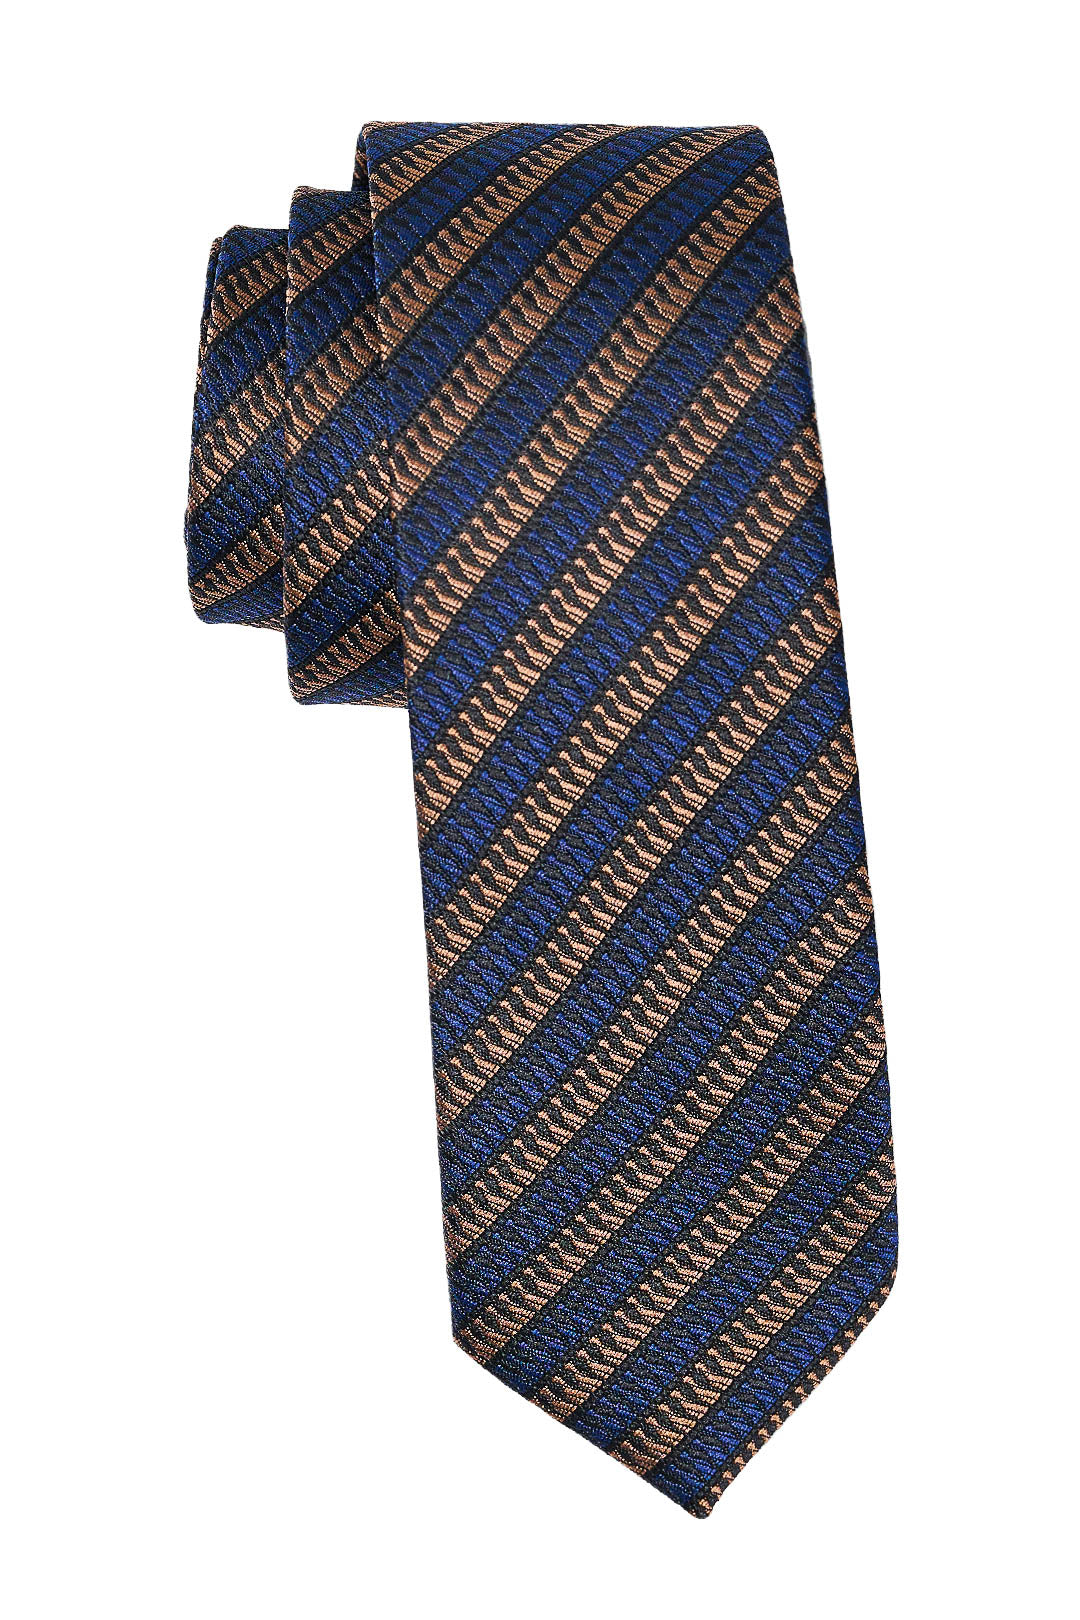 Brown & Blue Rep Tie